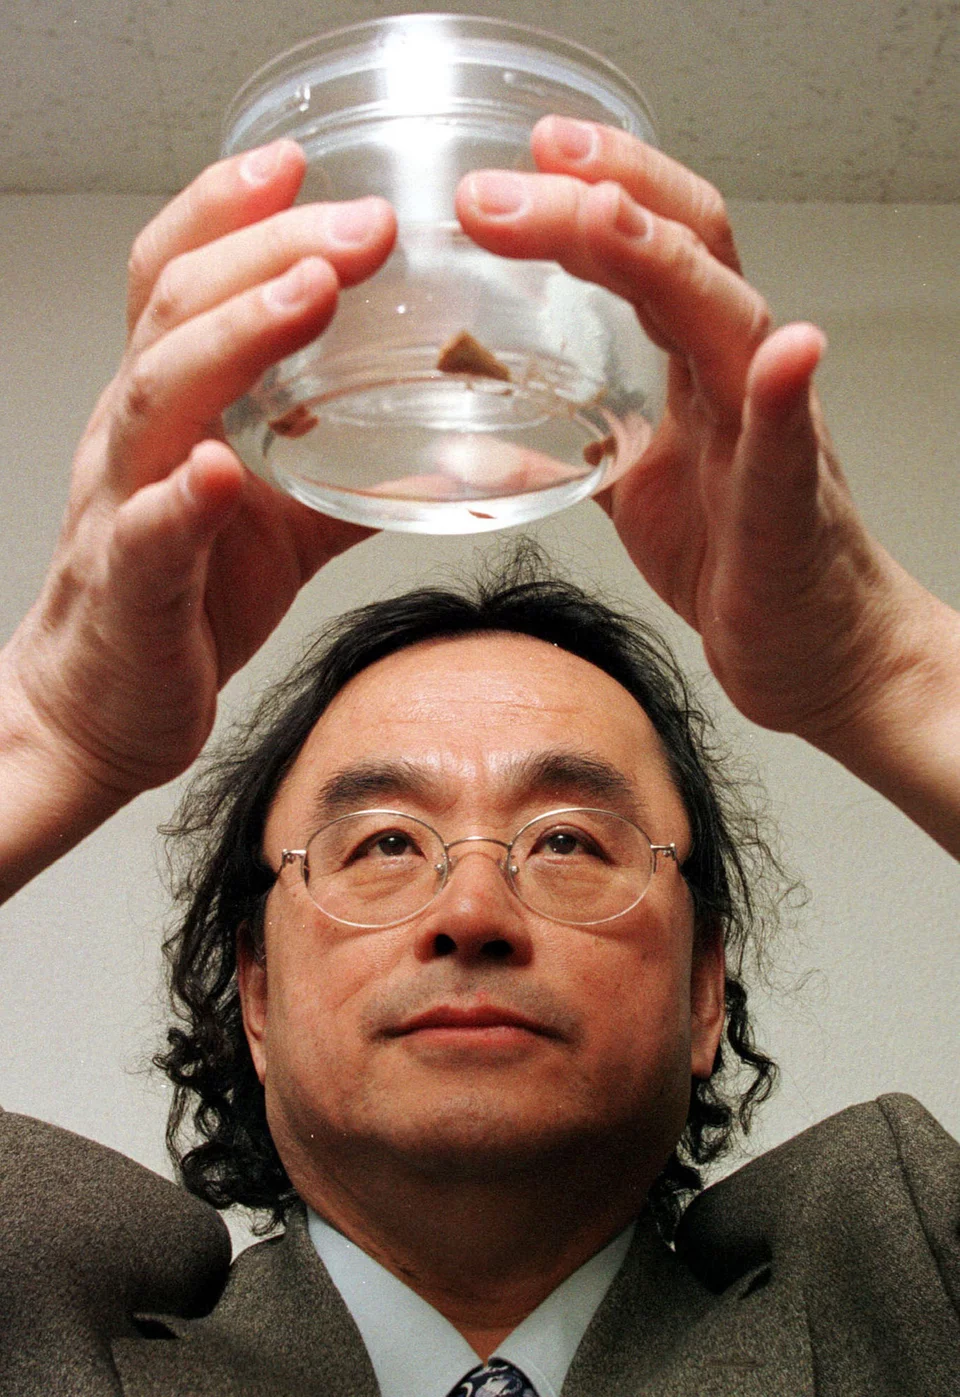 Ο Kenji Sugimoto, ιστορικός και συλλέκτης, κρατά το πολύτιμο βάζο με το κομμάτι από τον εγκέφαλο του διάσημου φυσικού, που προστέθηκε στη συλλογή του